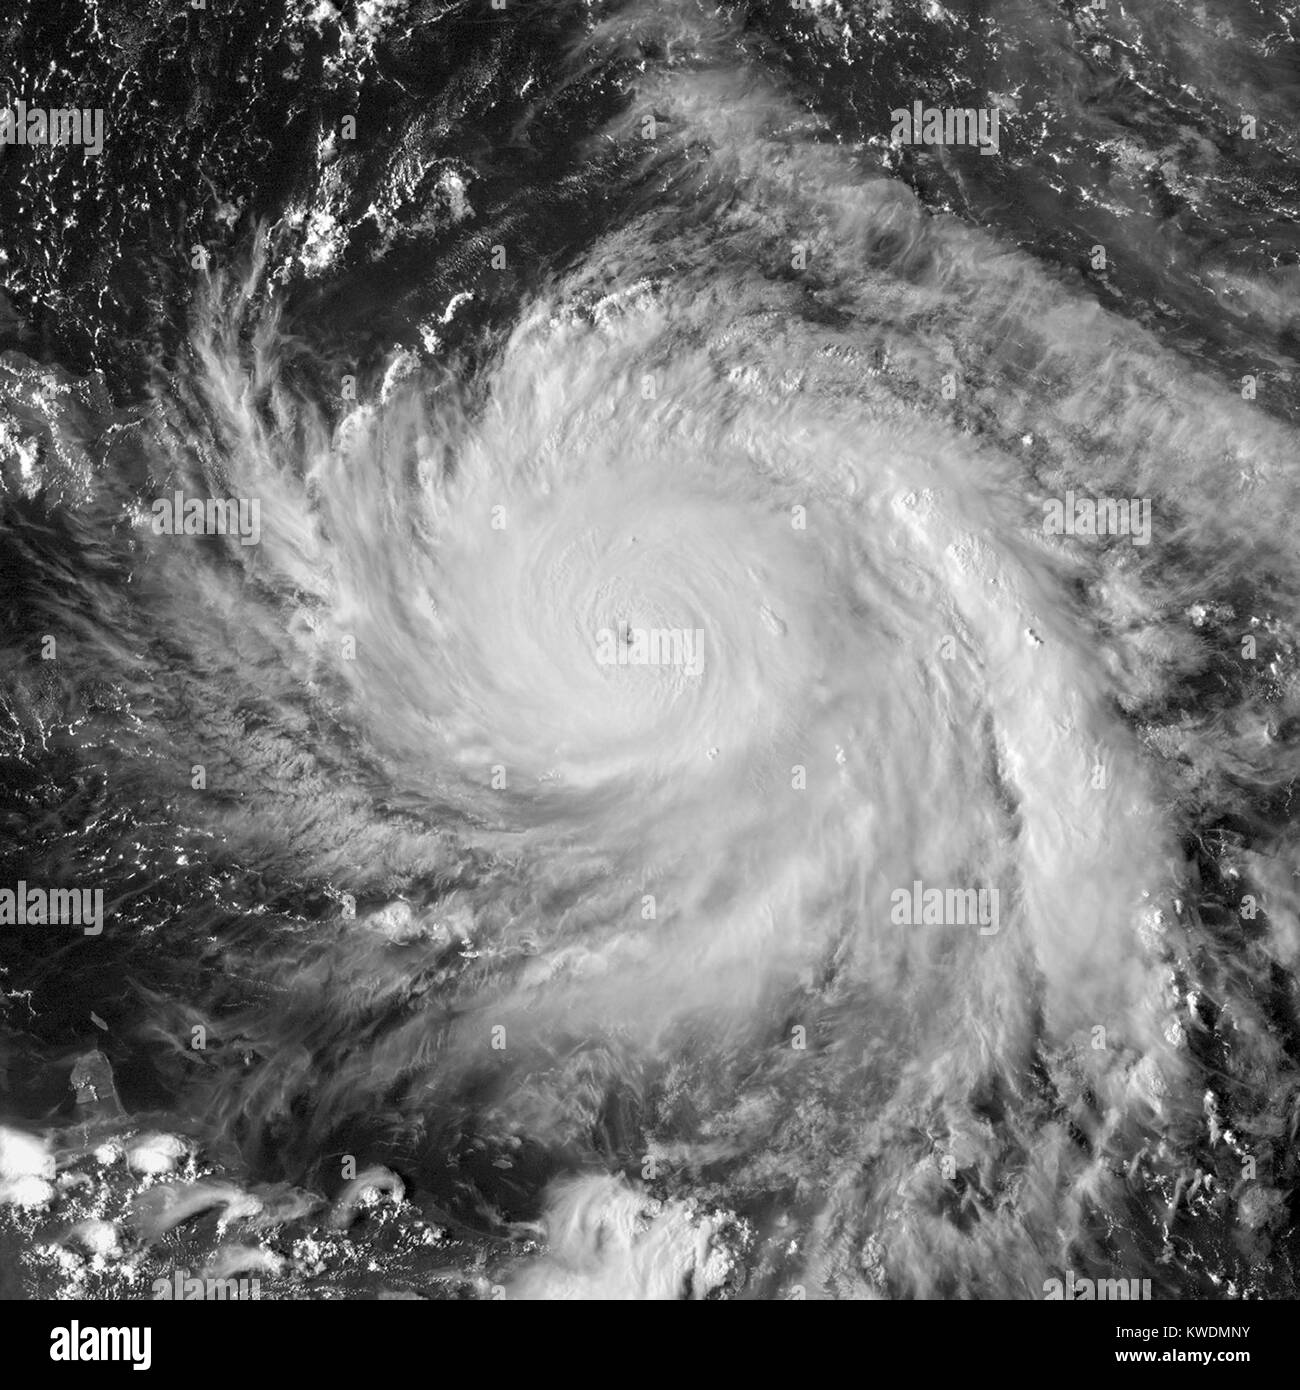 Image satellite de l'Ouragan Maria près de l'intensité maximale au nord-ouest de la Dominique au 19 septembre 2017. Elle a causé la catastrophe naturelle la plus grave jamais enregistrée en Dominique. Le 20 septembre, Maria frappé Porto Rico, causant des dommages catastrophiques et une crise humanitaire (BSLOC   2017 18 174) Banque D'Images